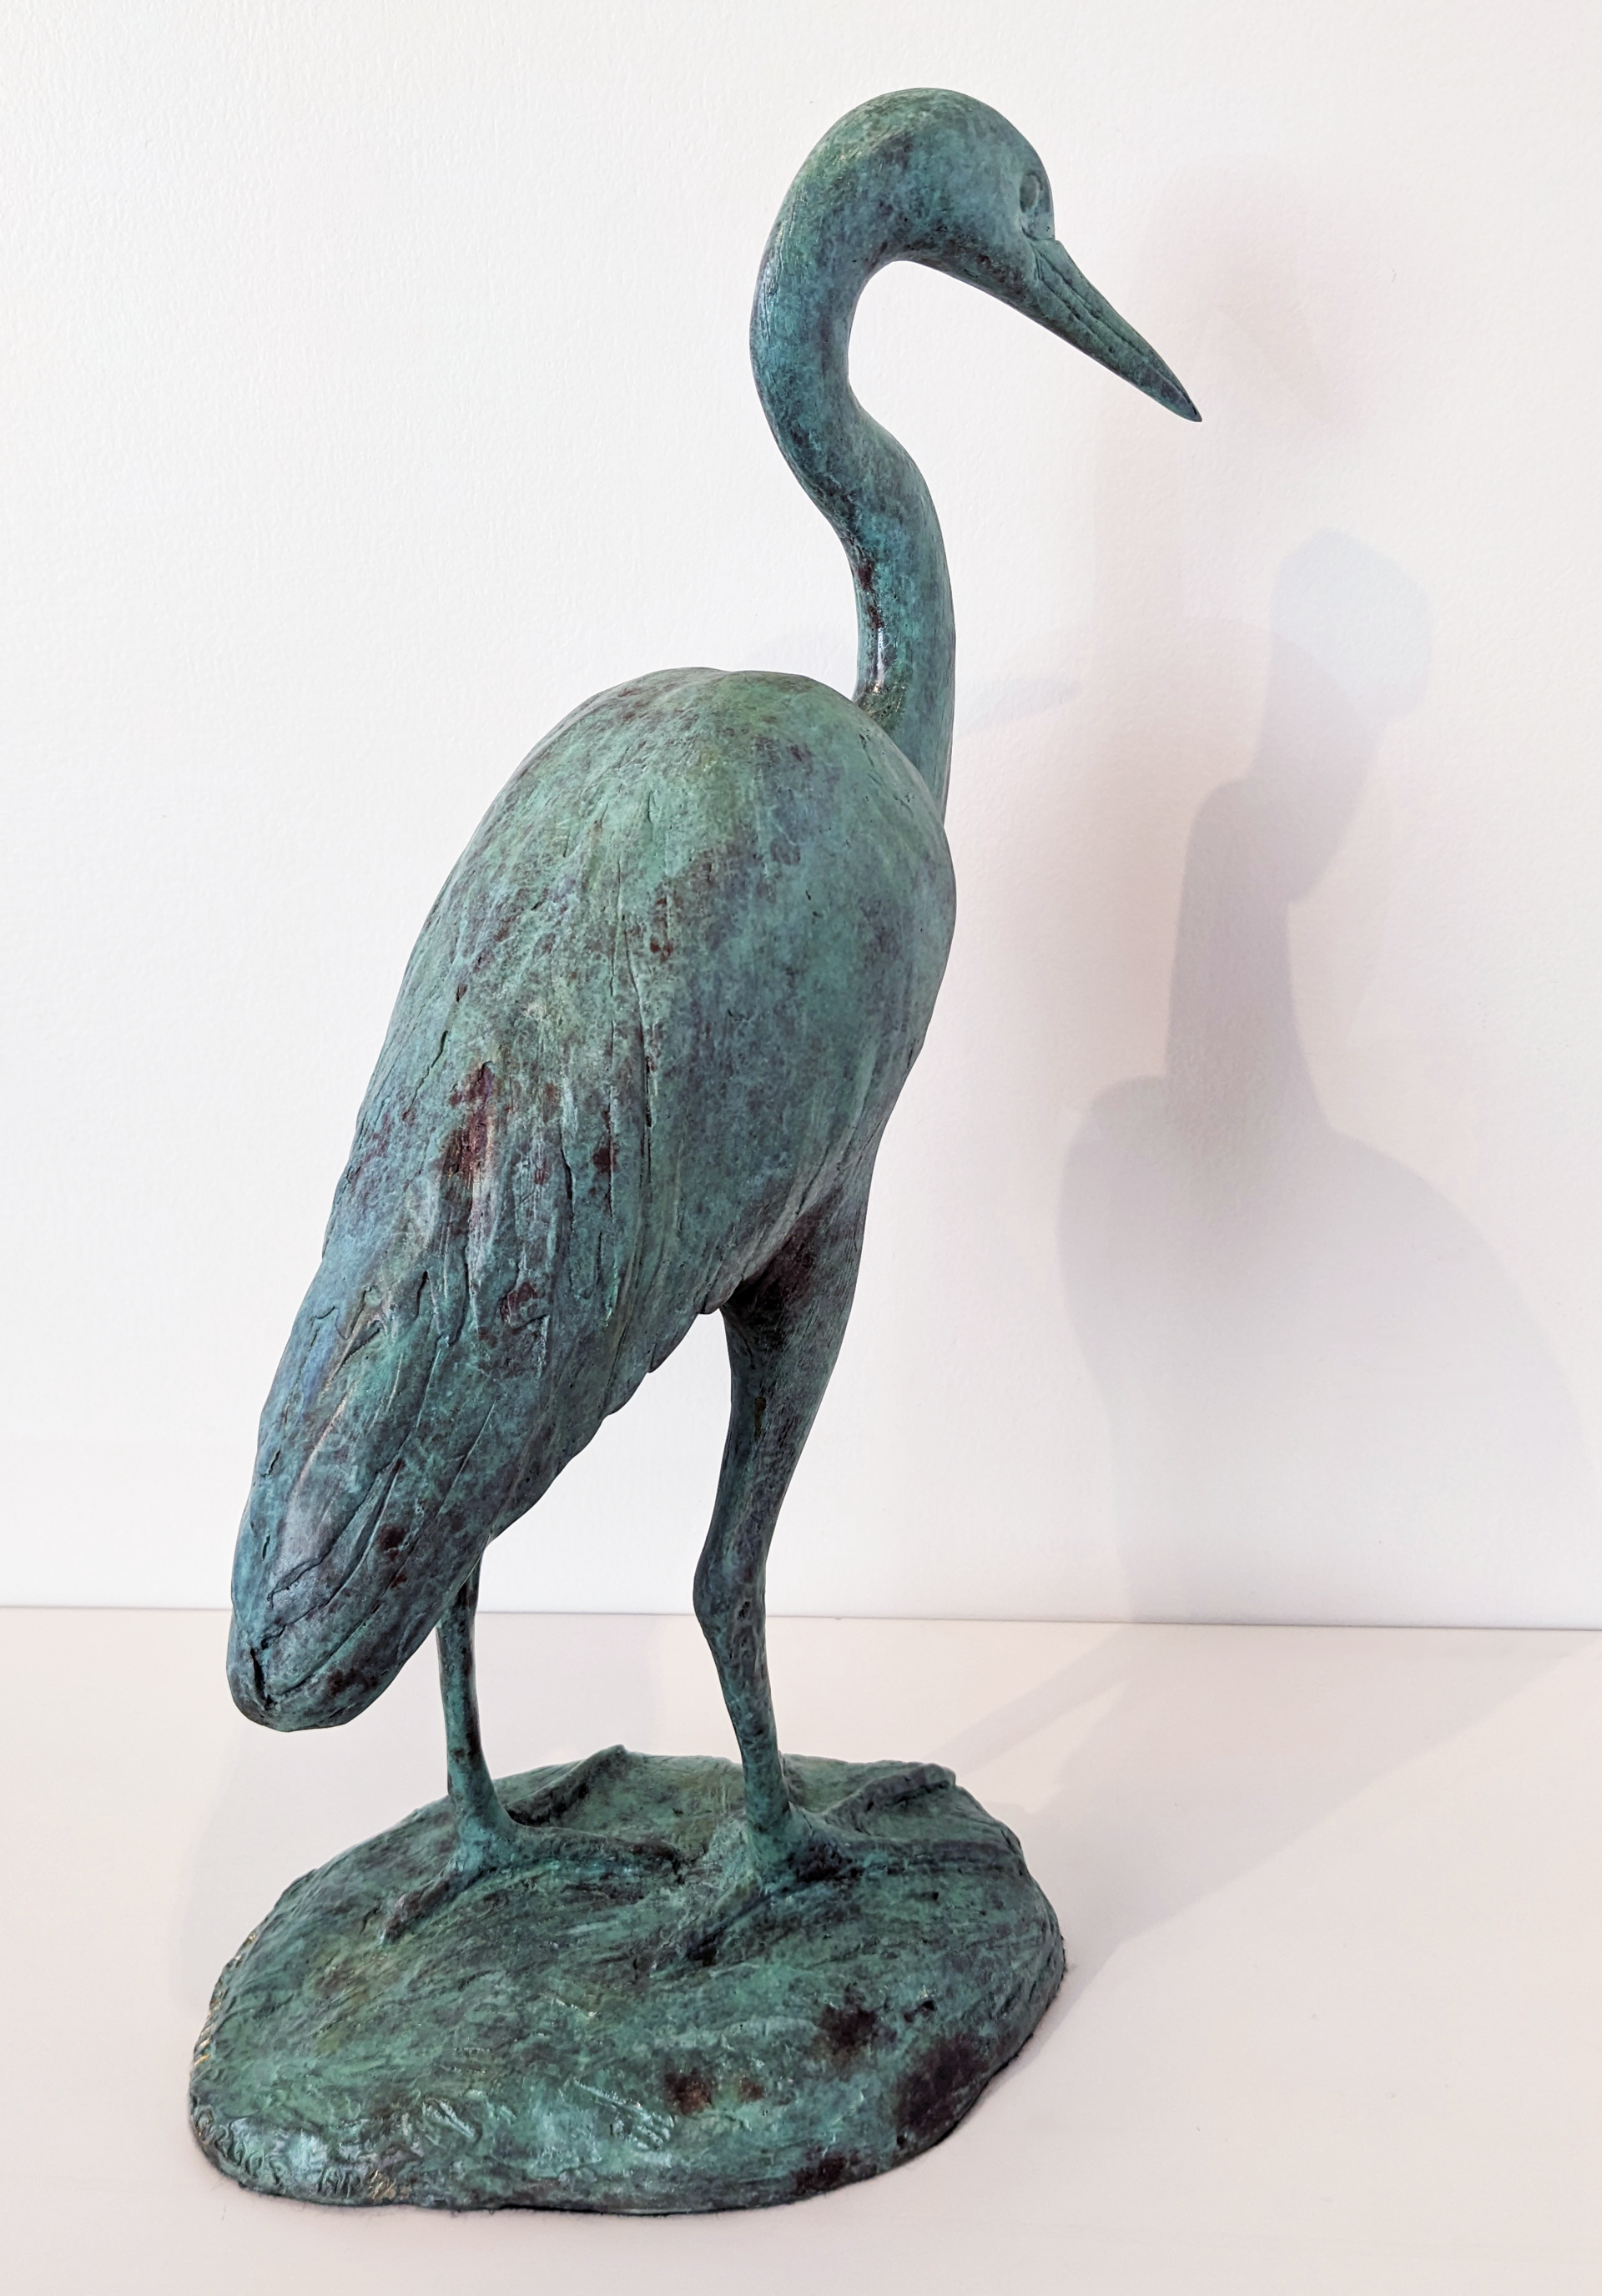 Heron (Greta) by Cathy Ferrell